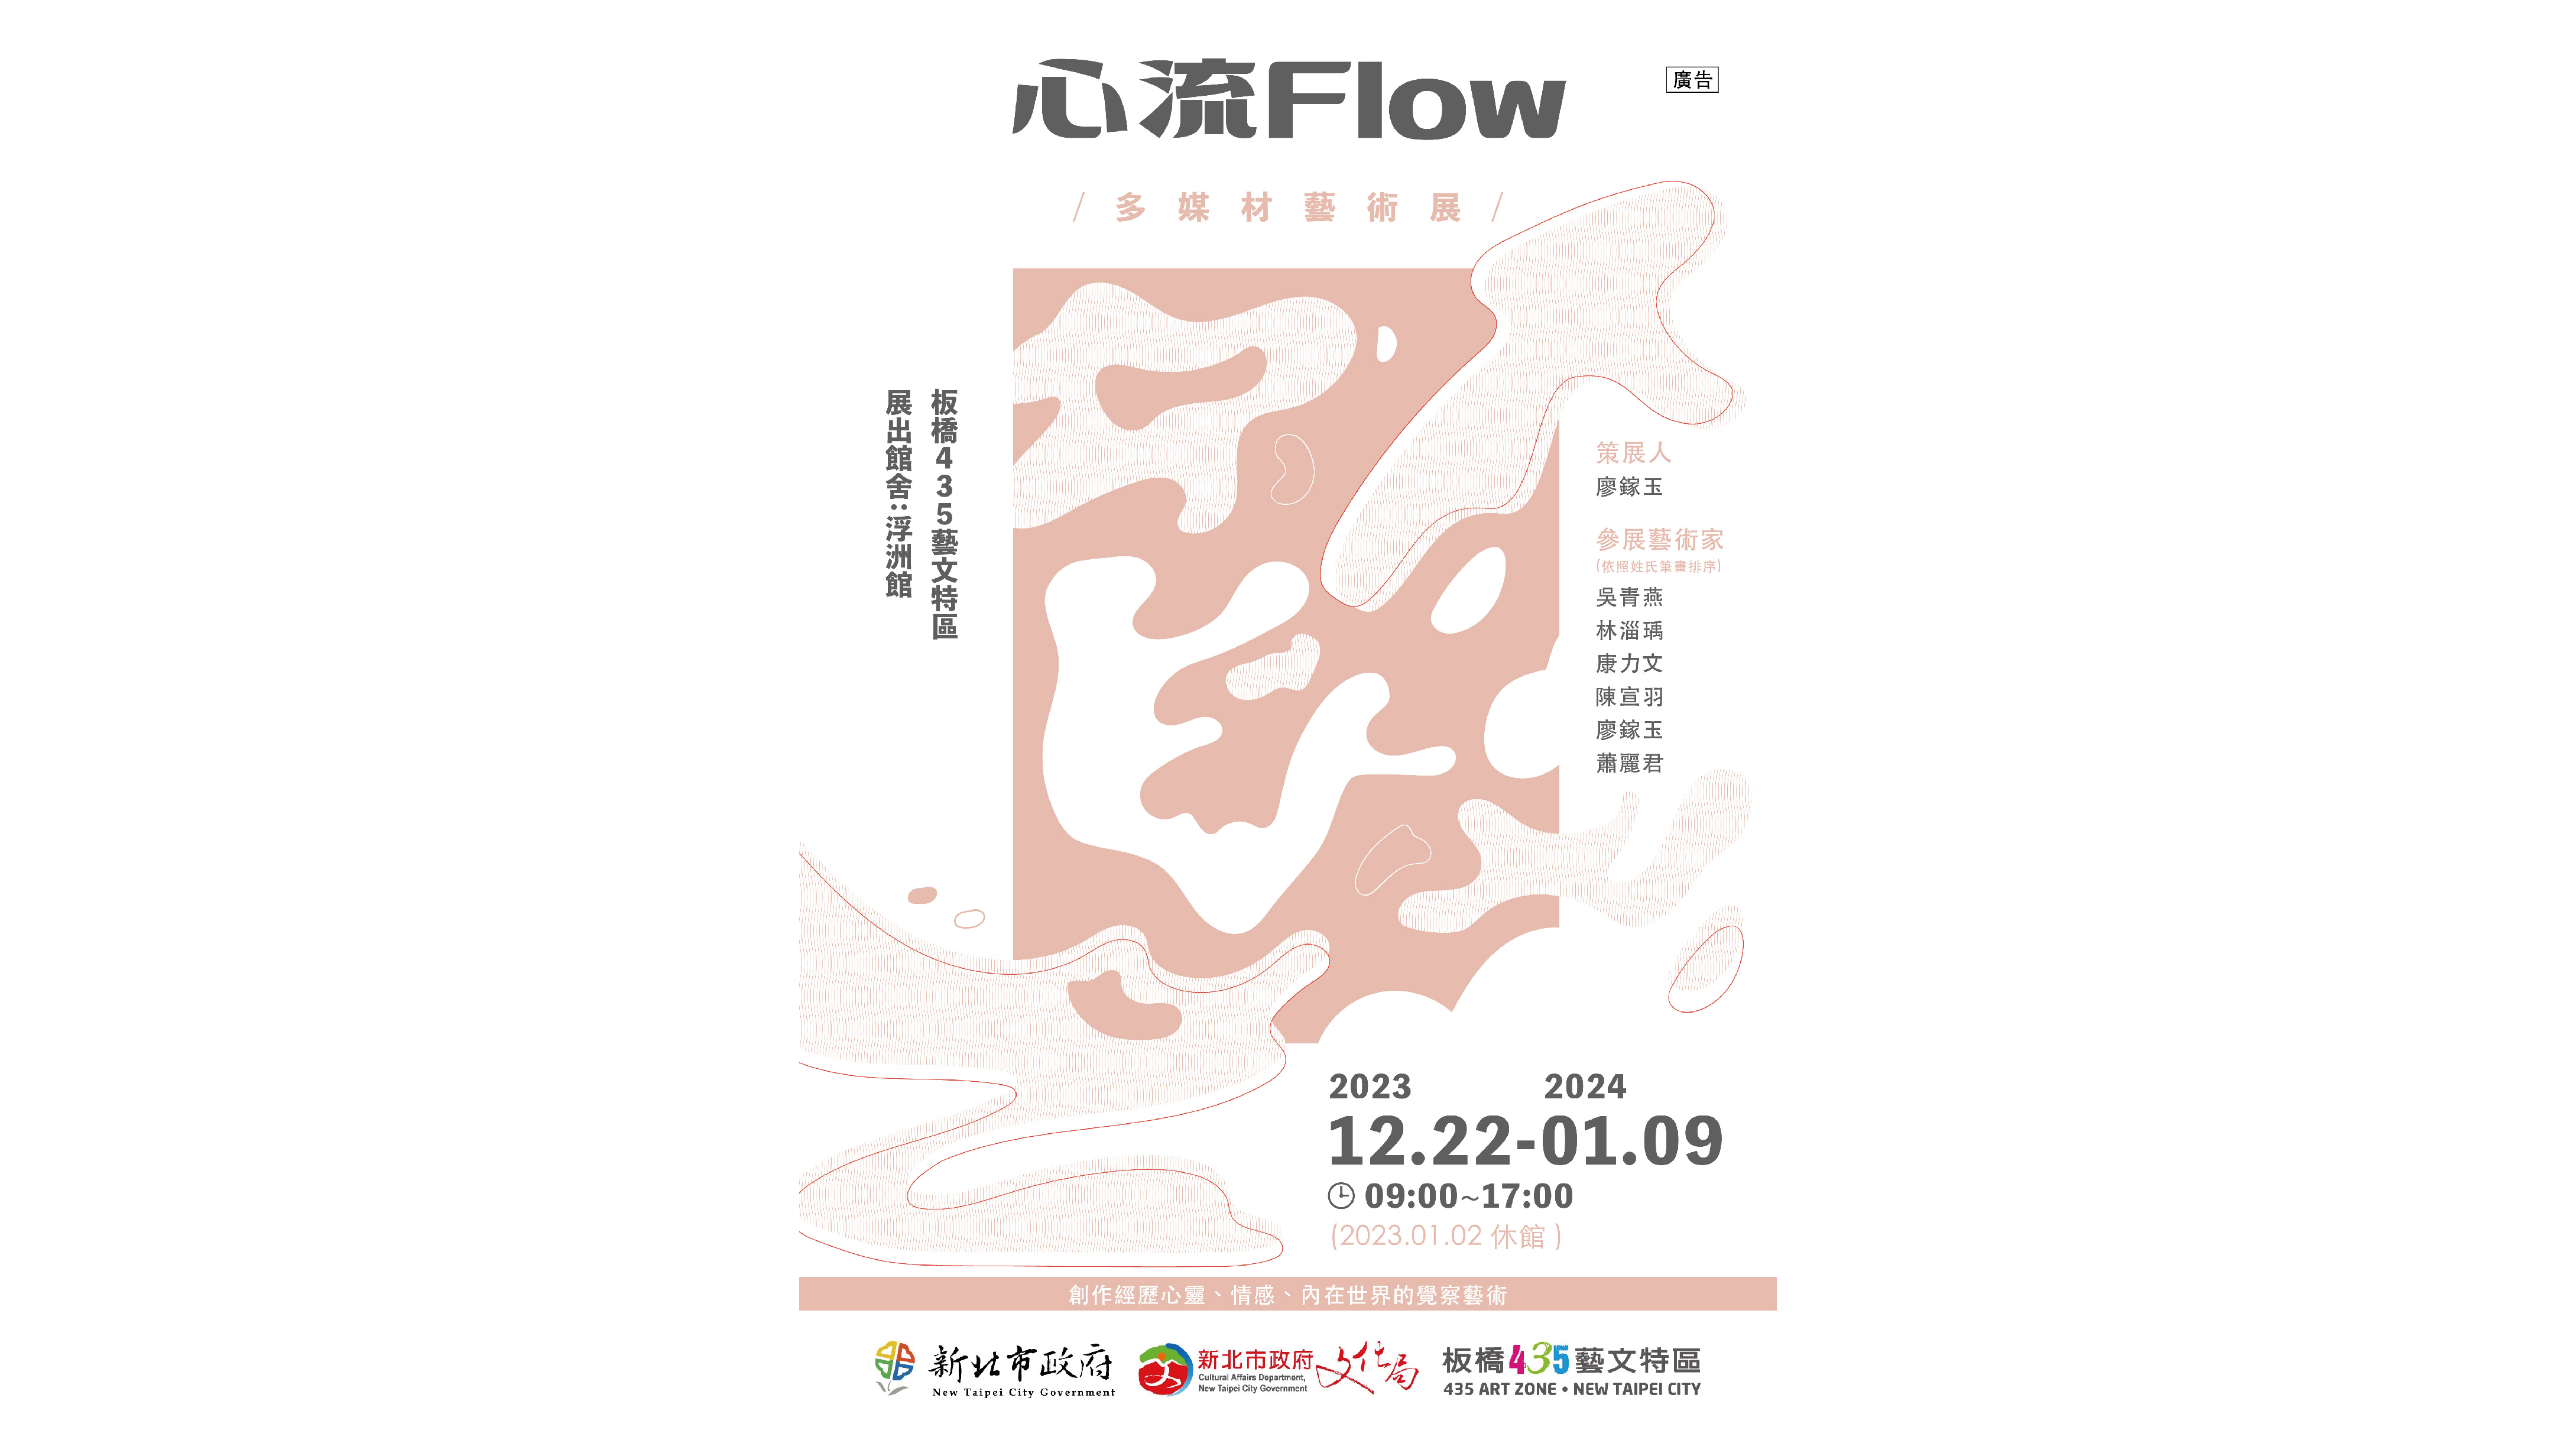 「心流Flow」多媒材藝術展